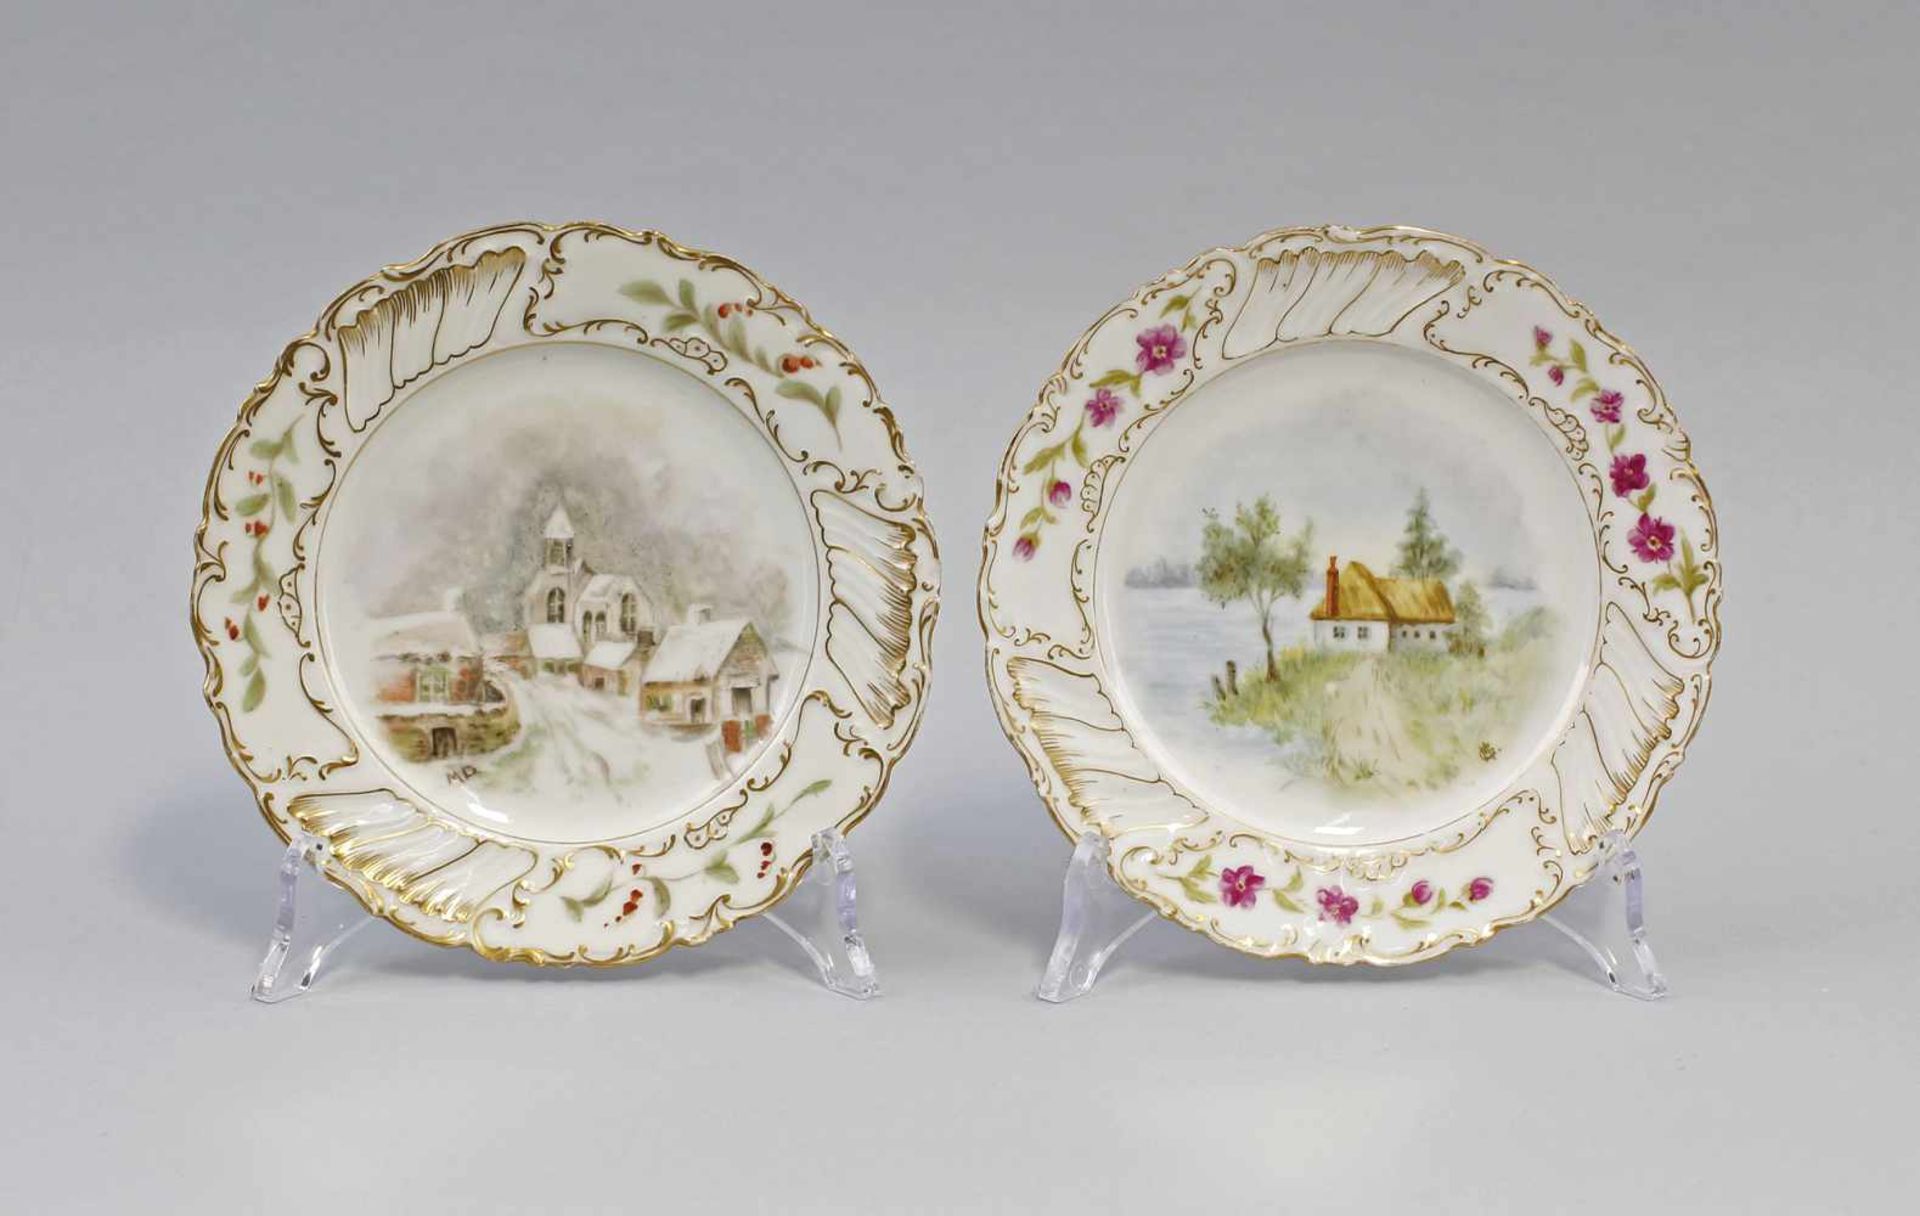 Paar kleine Bildteller Jugendstil:. undeutlich gemarkt, um 1900, flachgemuldete Tellerchen mit